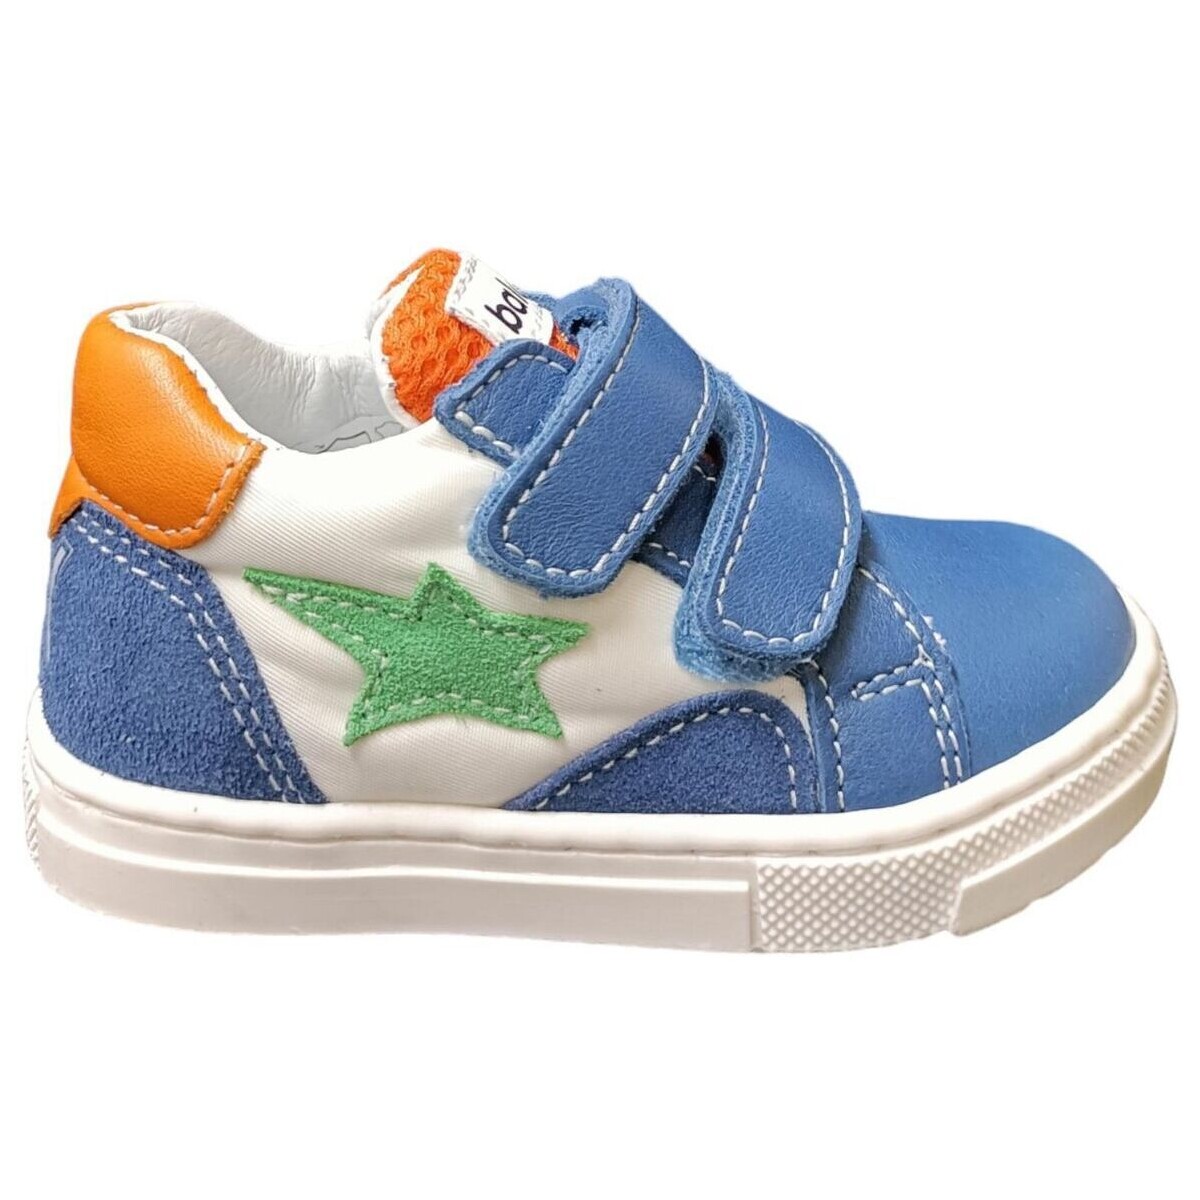 Sapatos Criança Sapatilhas Balocchi MINI Multicolor